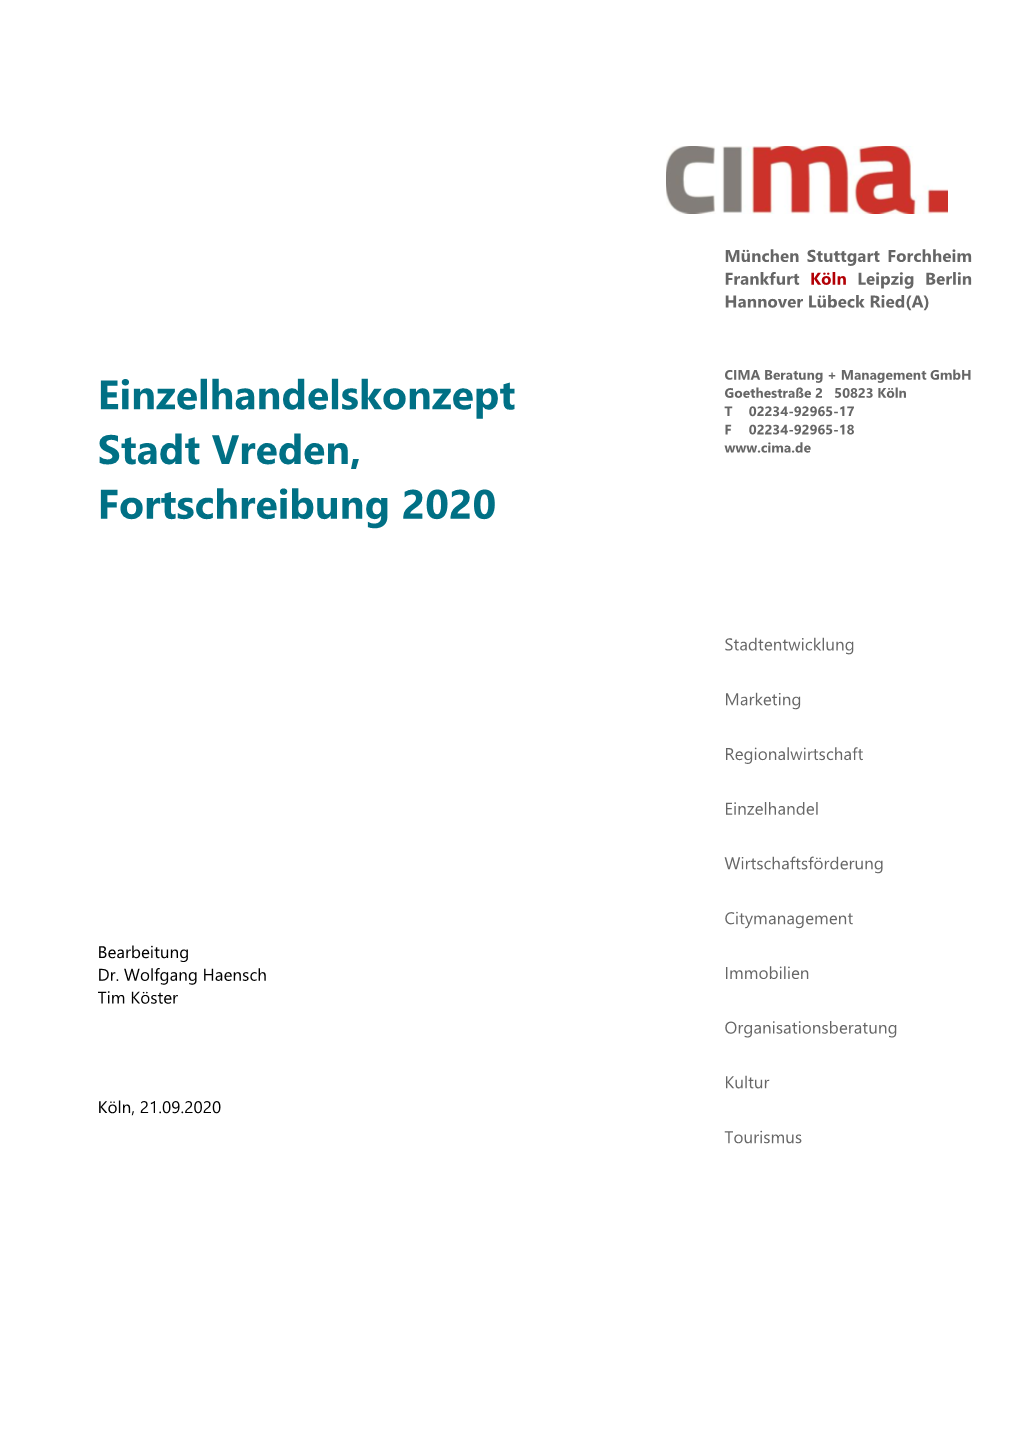 Einzelhandelskonzept Stadt Vreden, Fortschreibung 2020